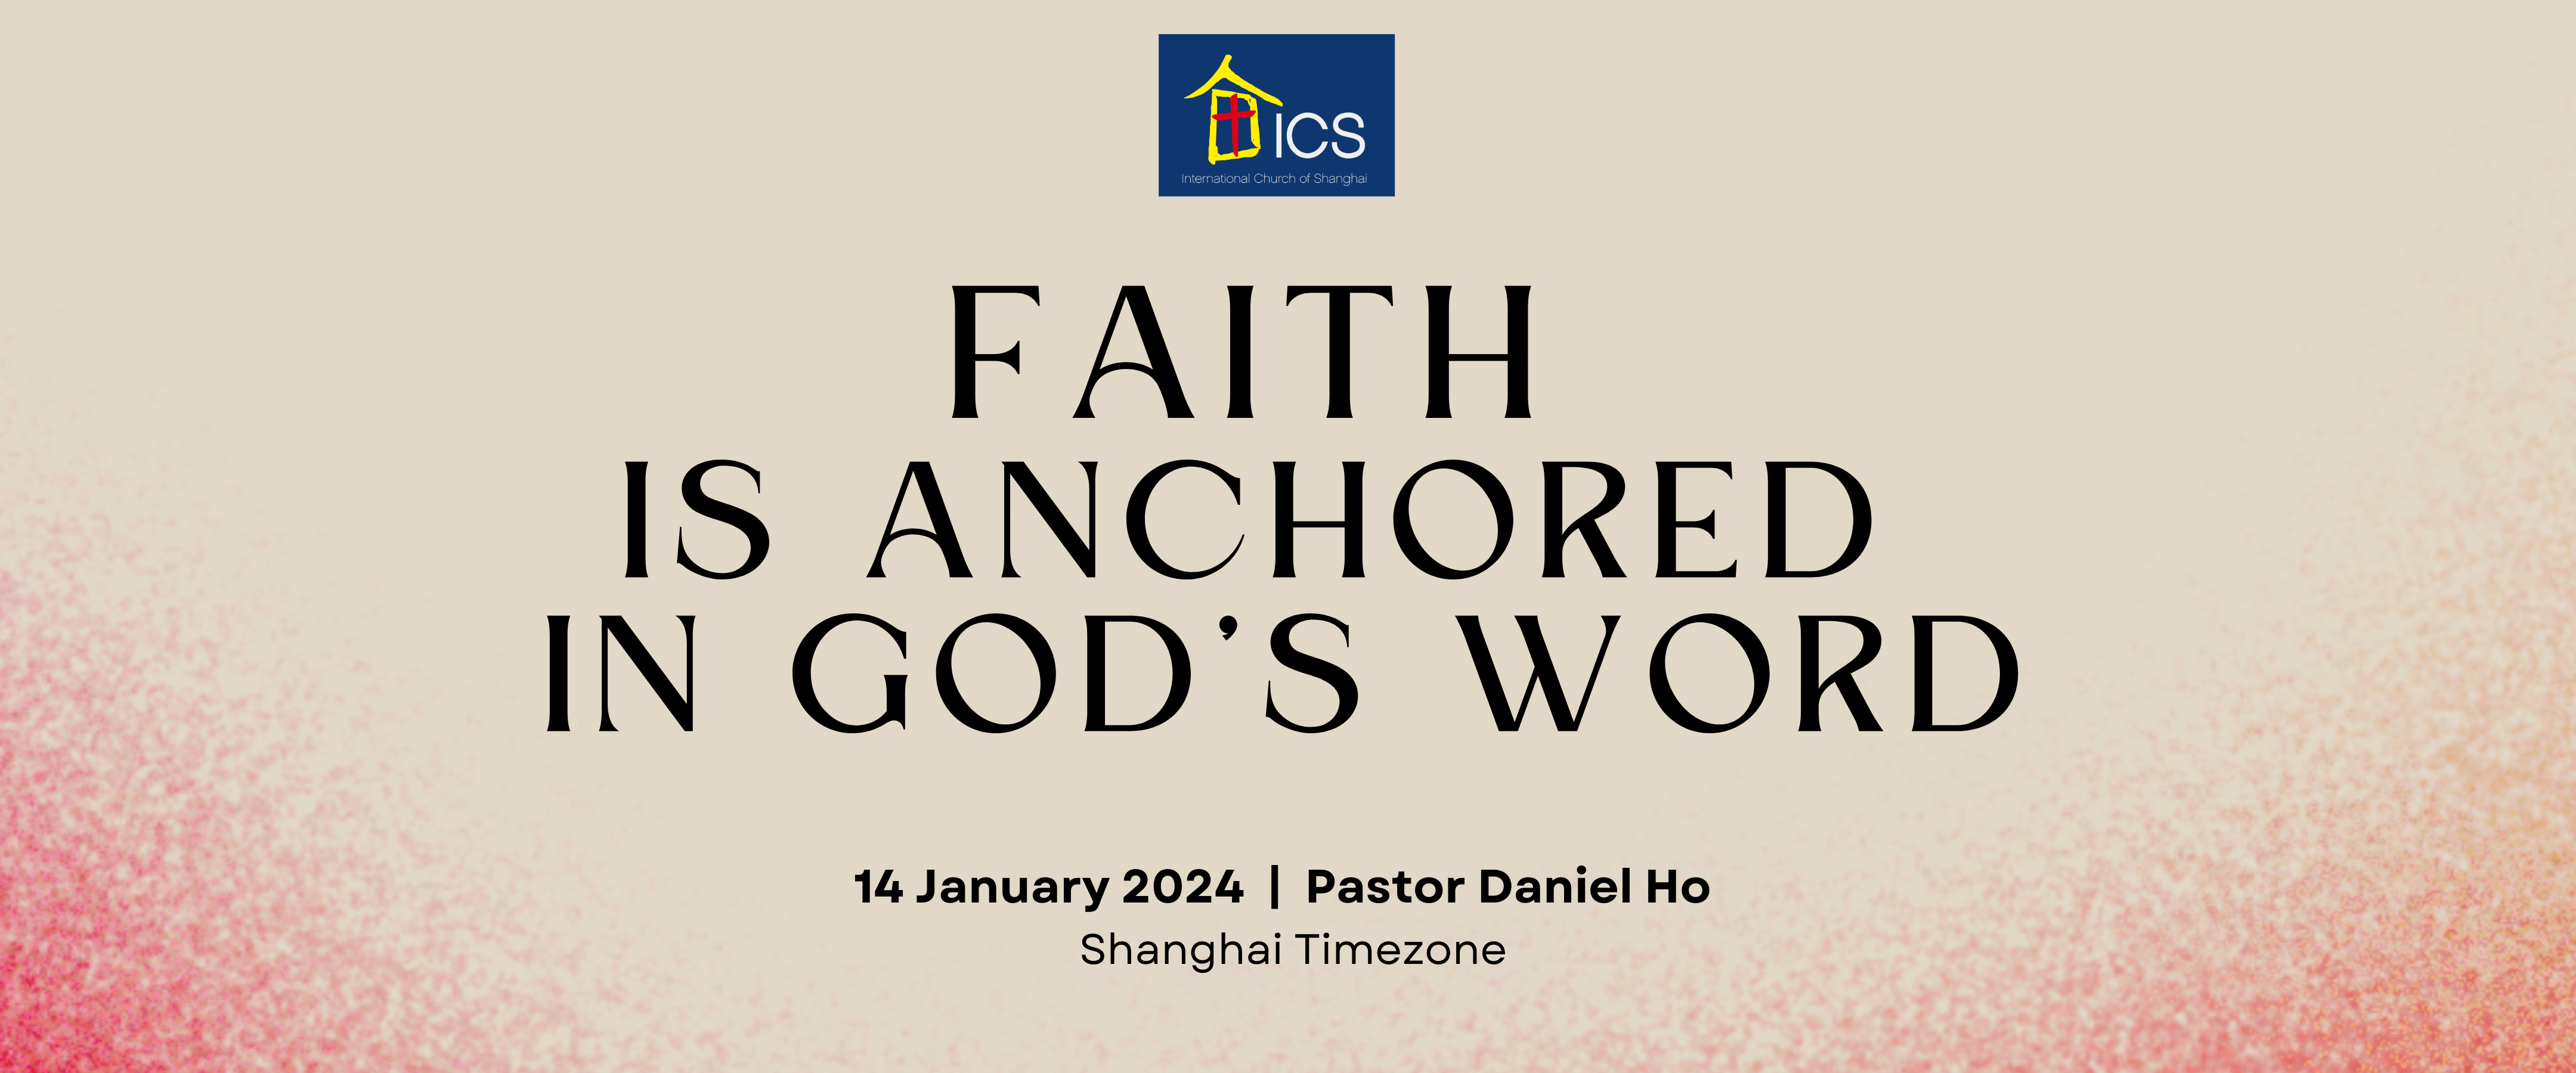 Faith is anchored in God’s word